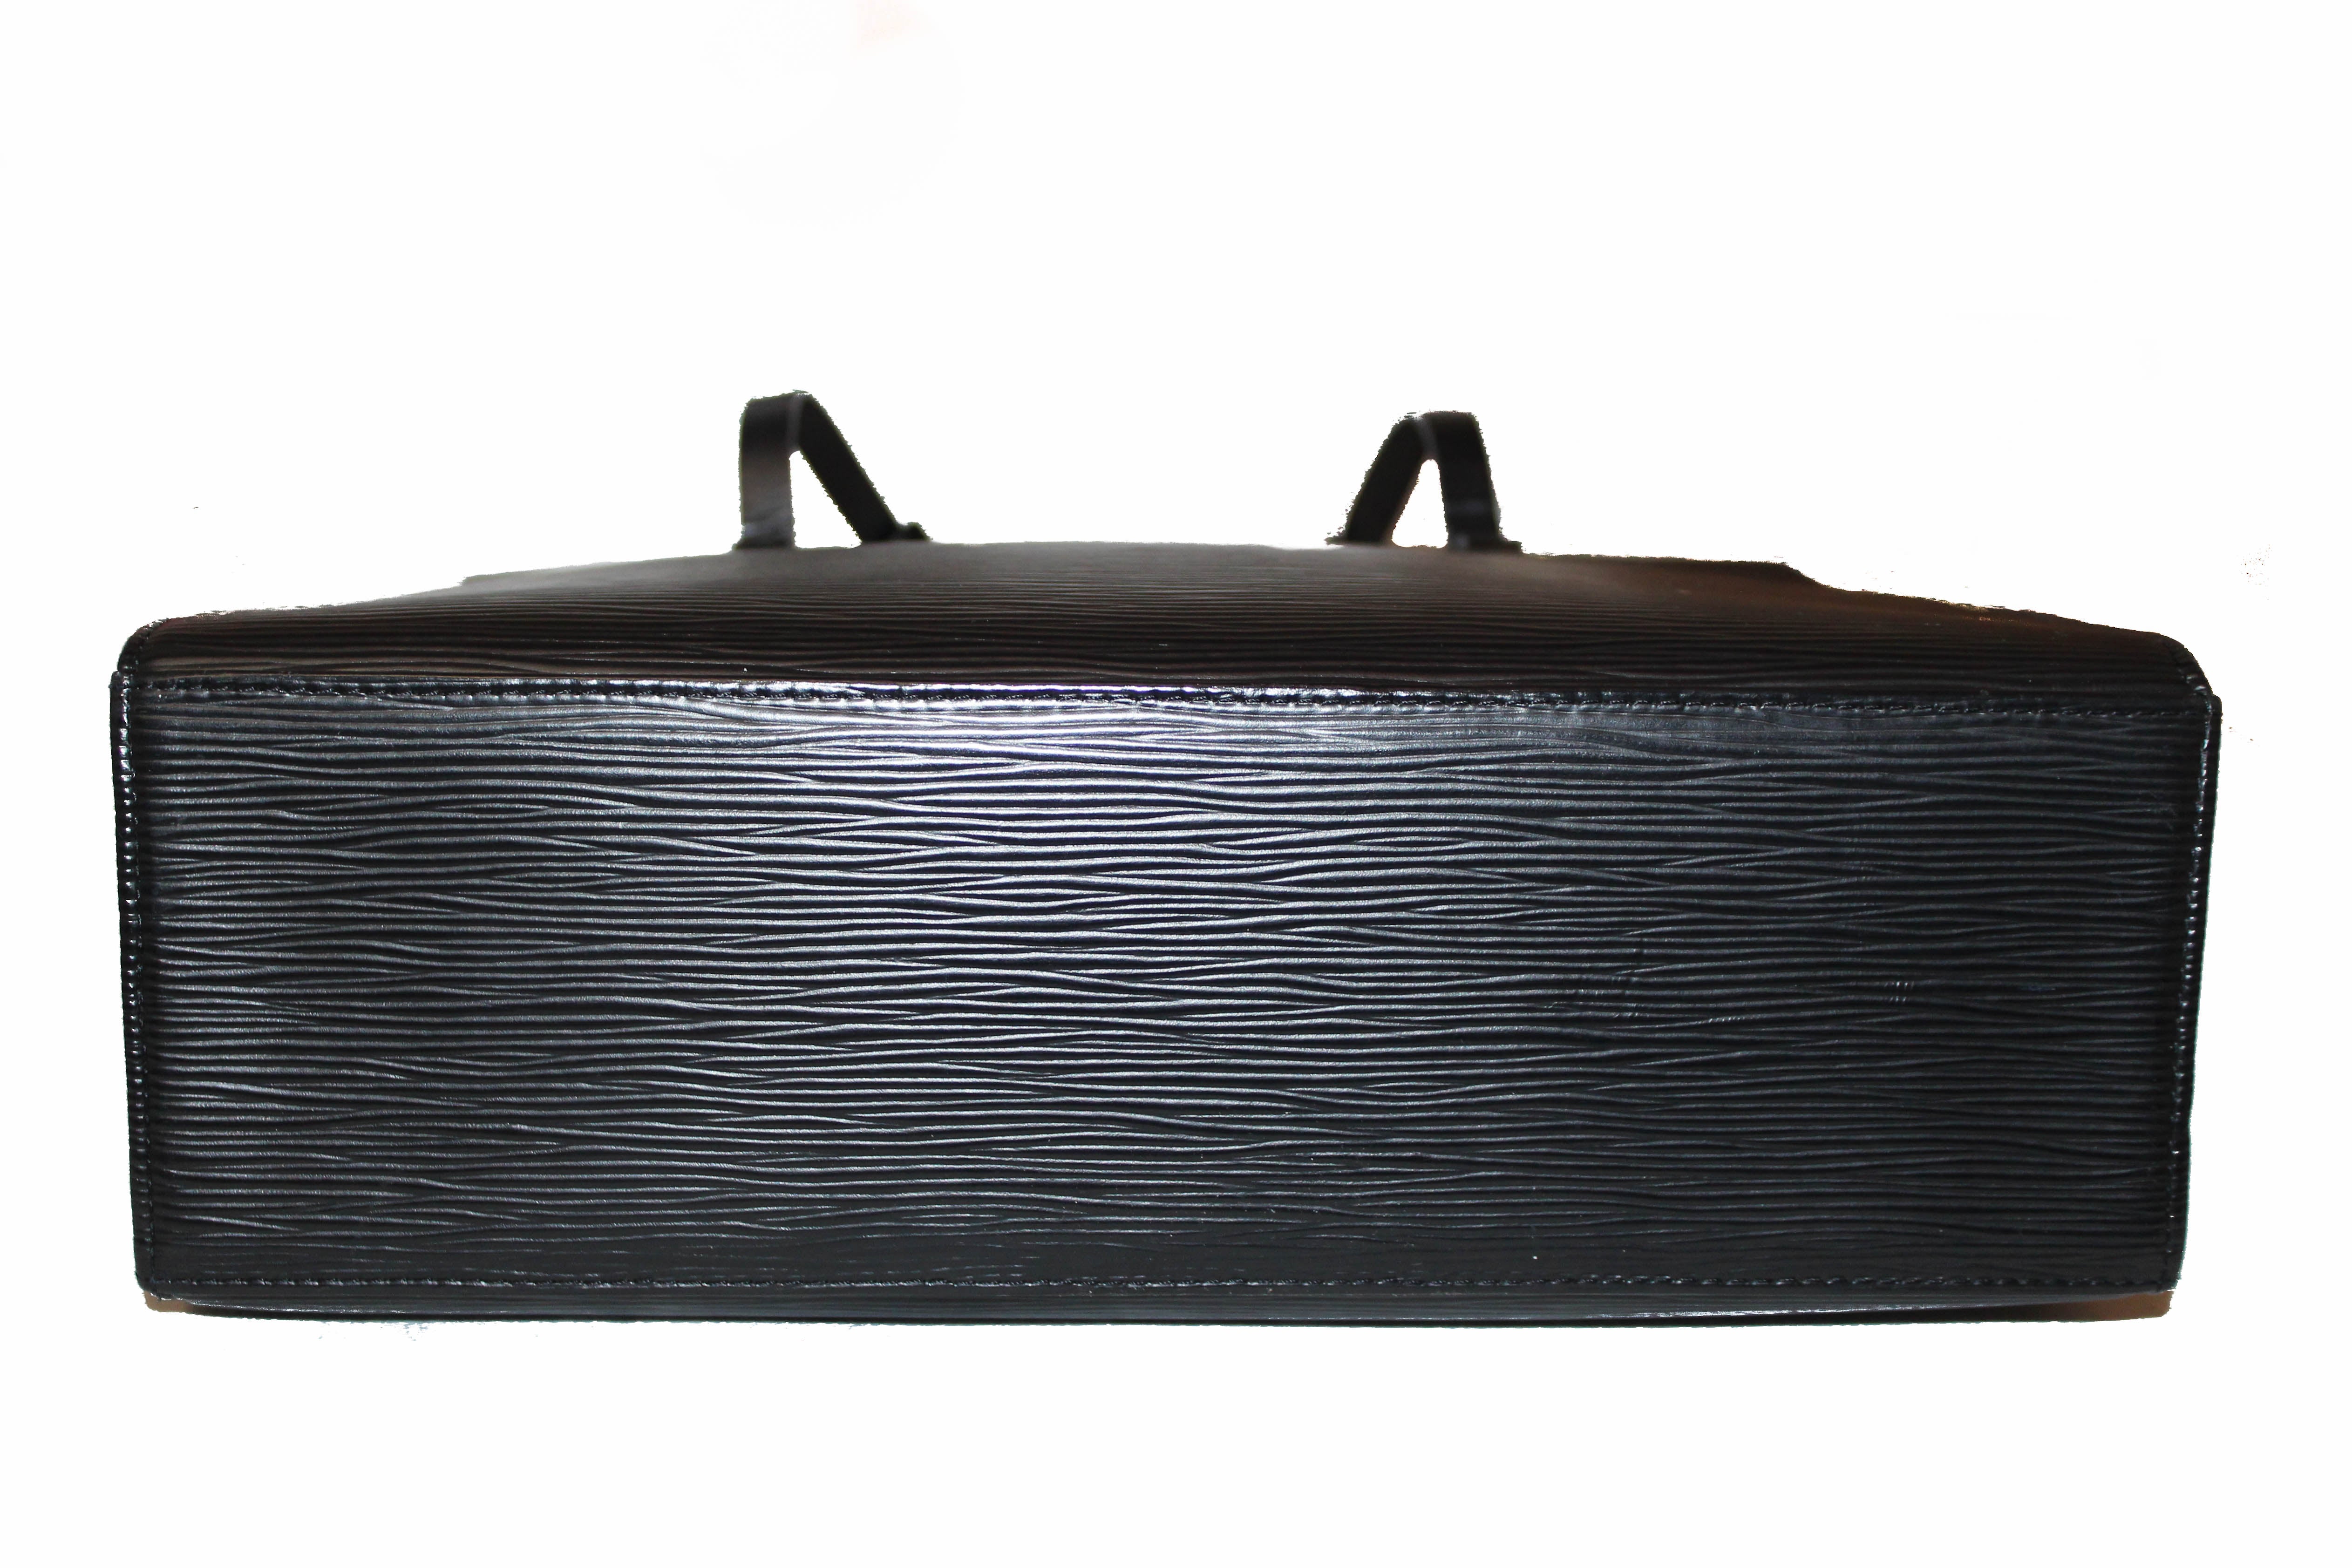 Authentic Louis Vuitton Black Epi Leather Croisette PM Tote Bag – Paris  Station Shop